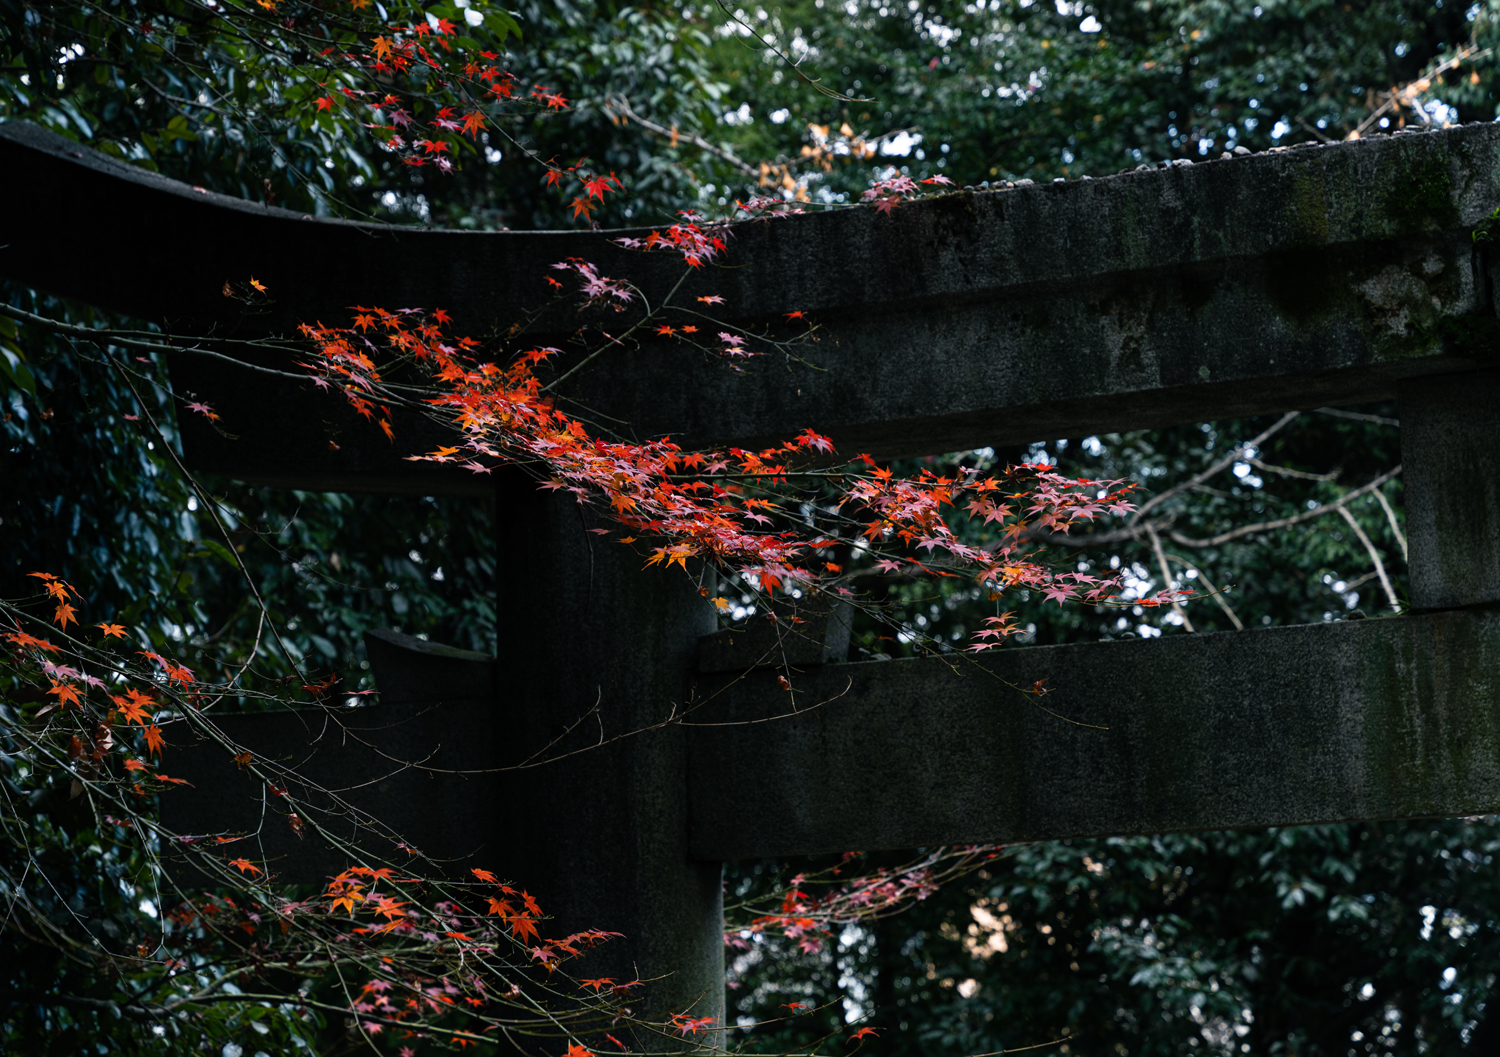 鳥居と紅葉 / Torii gate and autumn leaves